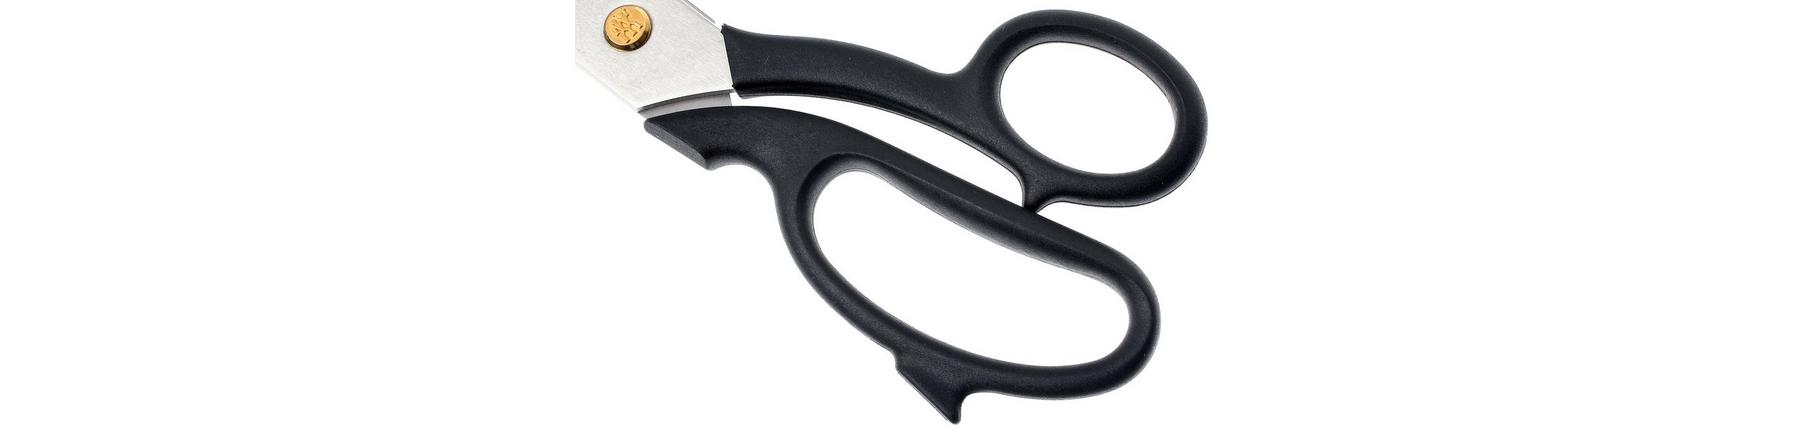 Zwilling J.A. Henckels Tailor's Scissors 26 cm (10